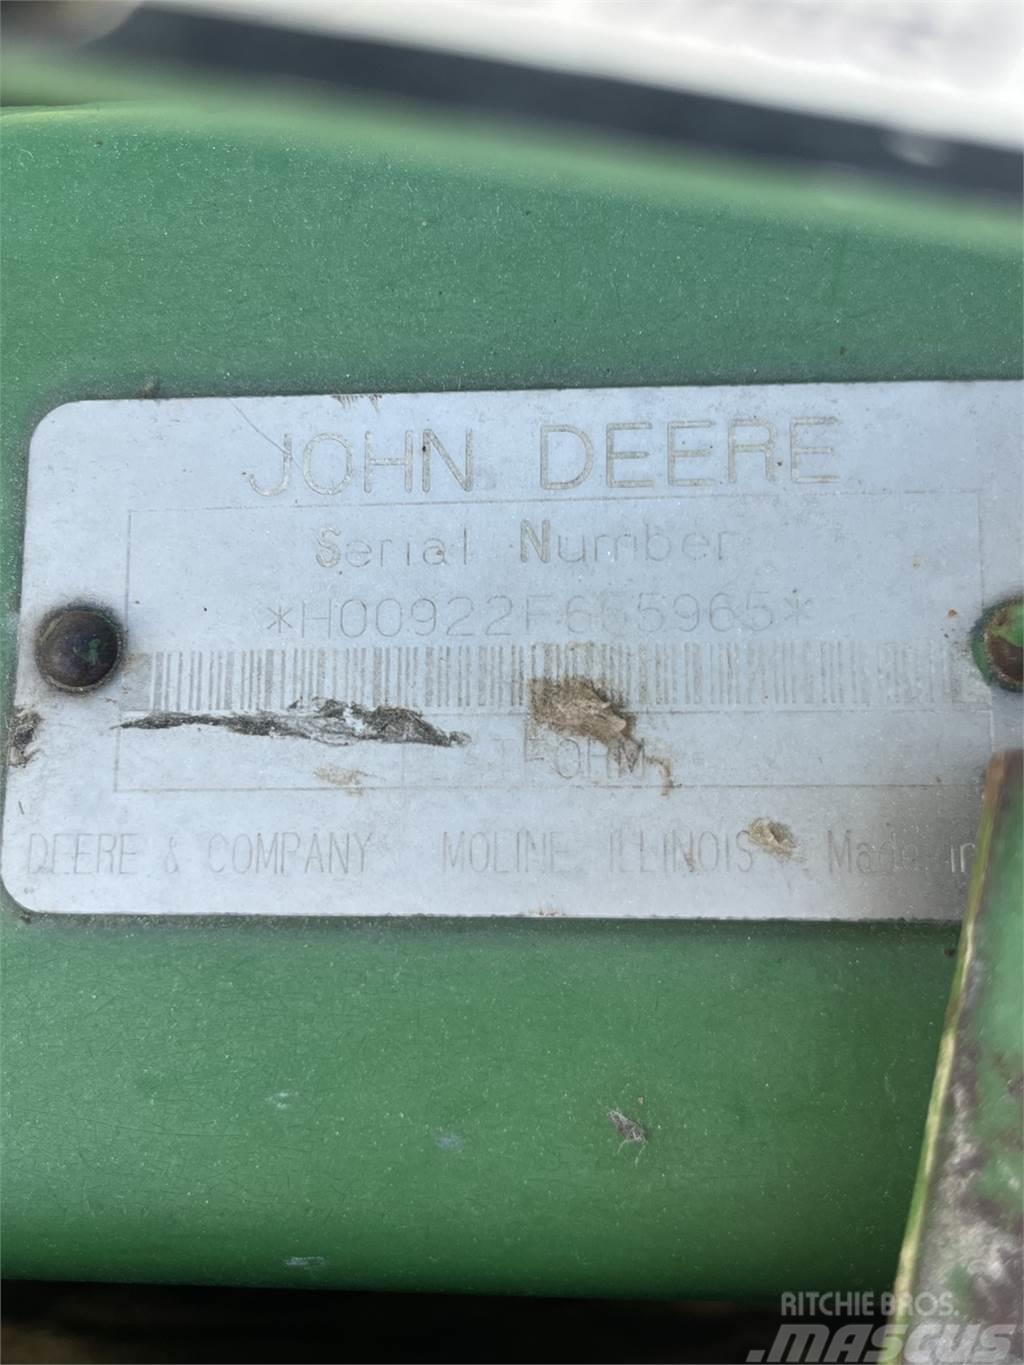 John Deere 922 Combine harvester spares & accessories